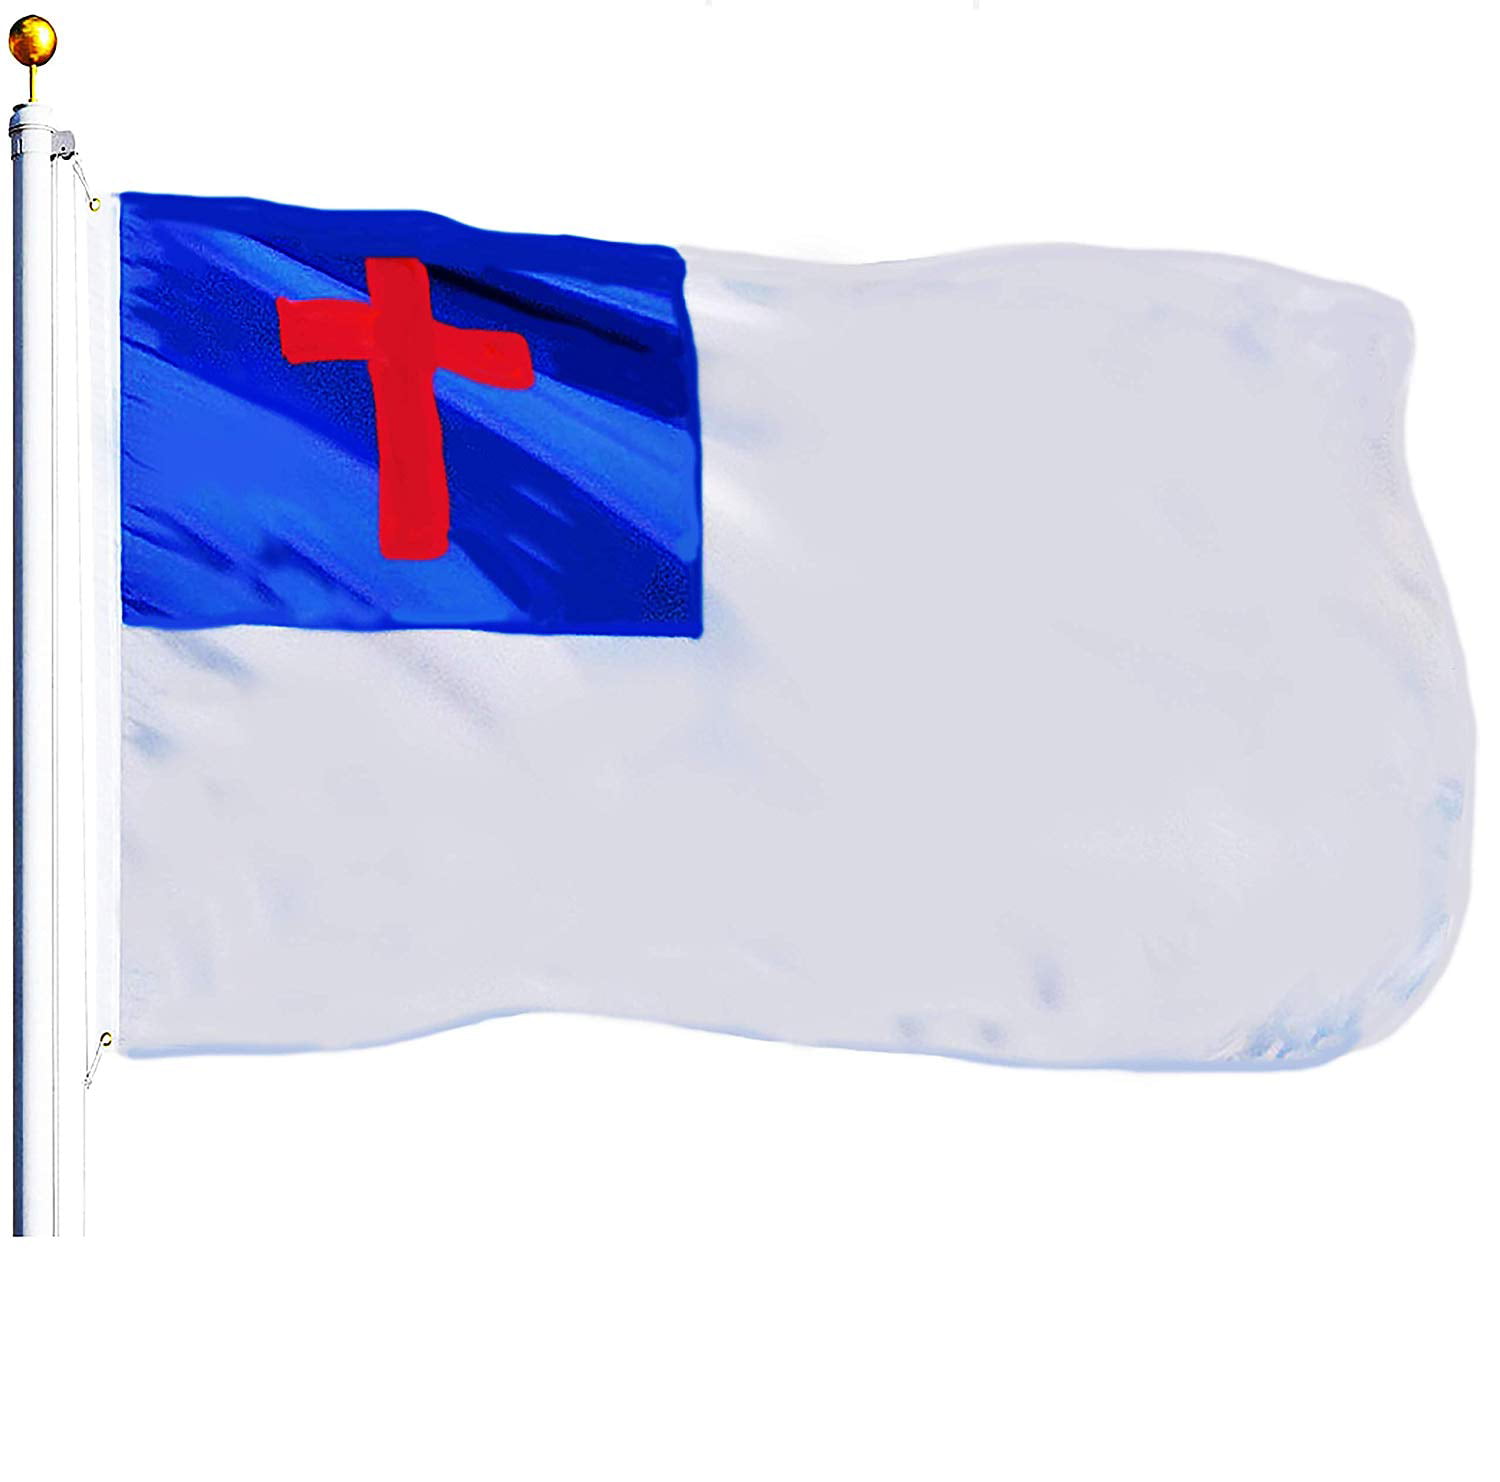 Printable Christian Flag